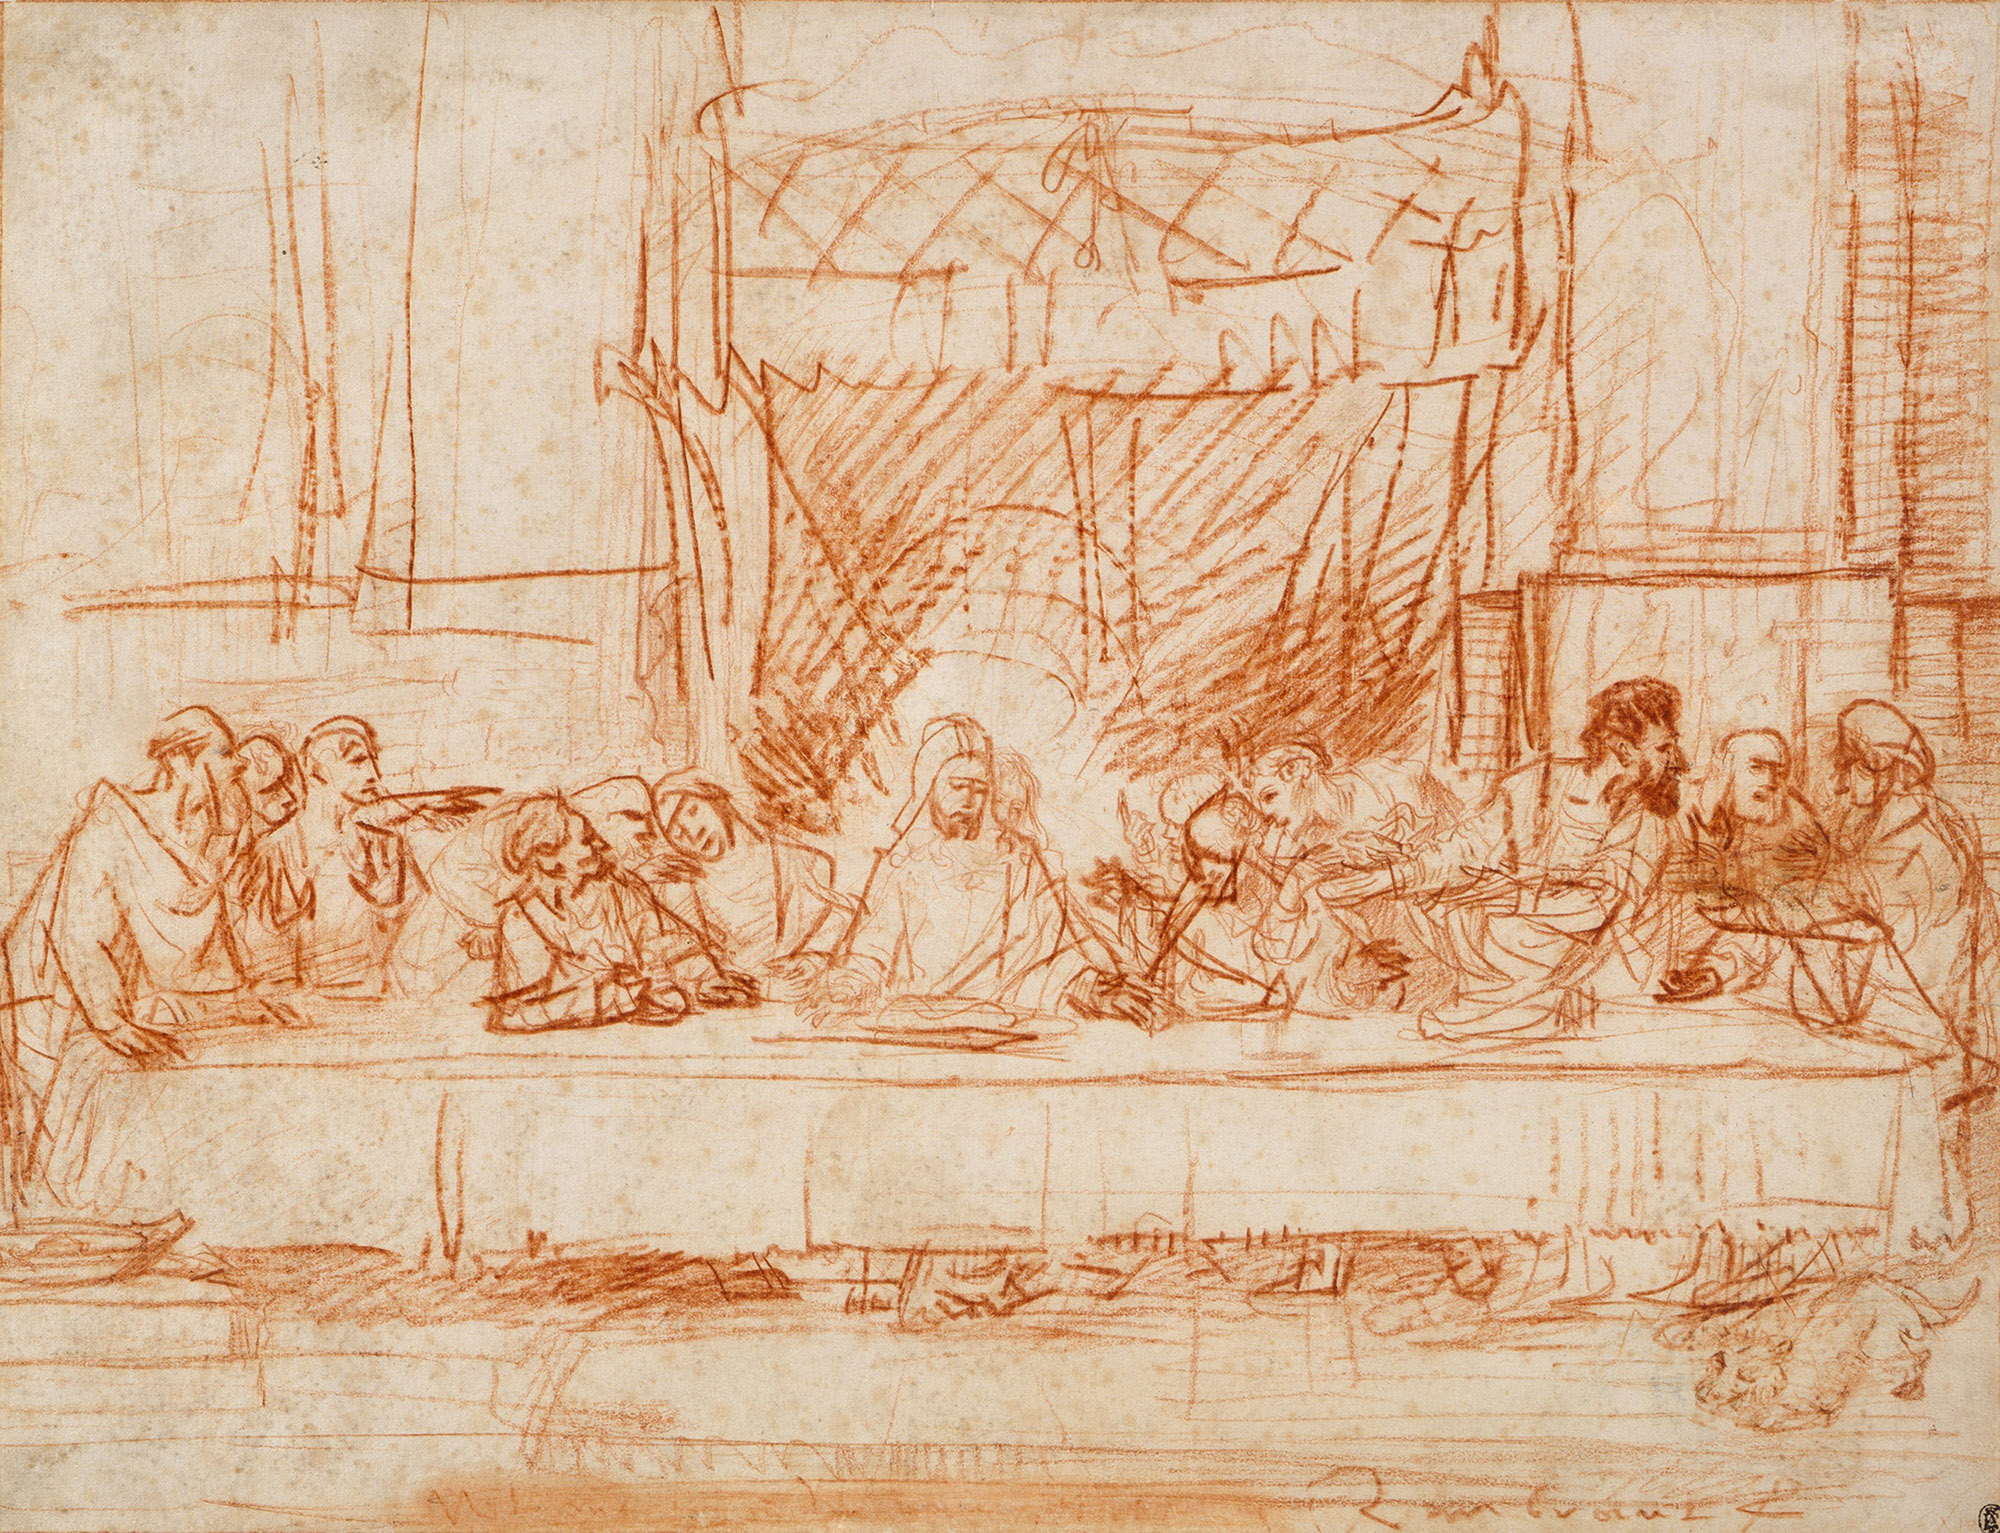 Рембрандт Харменс ван Рейн. "Тайная вечеря (реплика на Леонардо да Винчи)". 1634-1635. Метрополитен, Нью-Йорк.